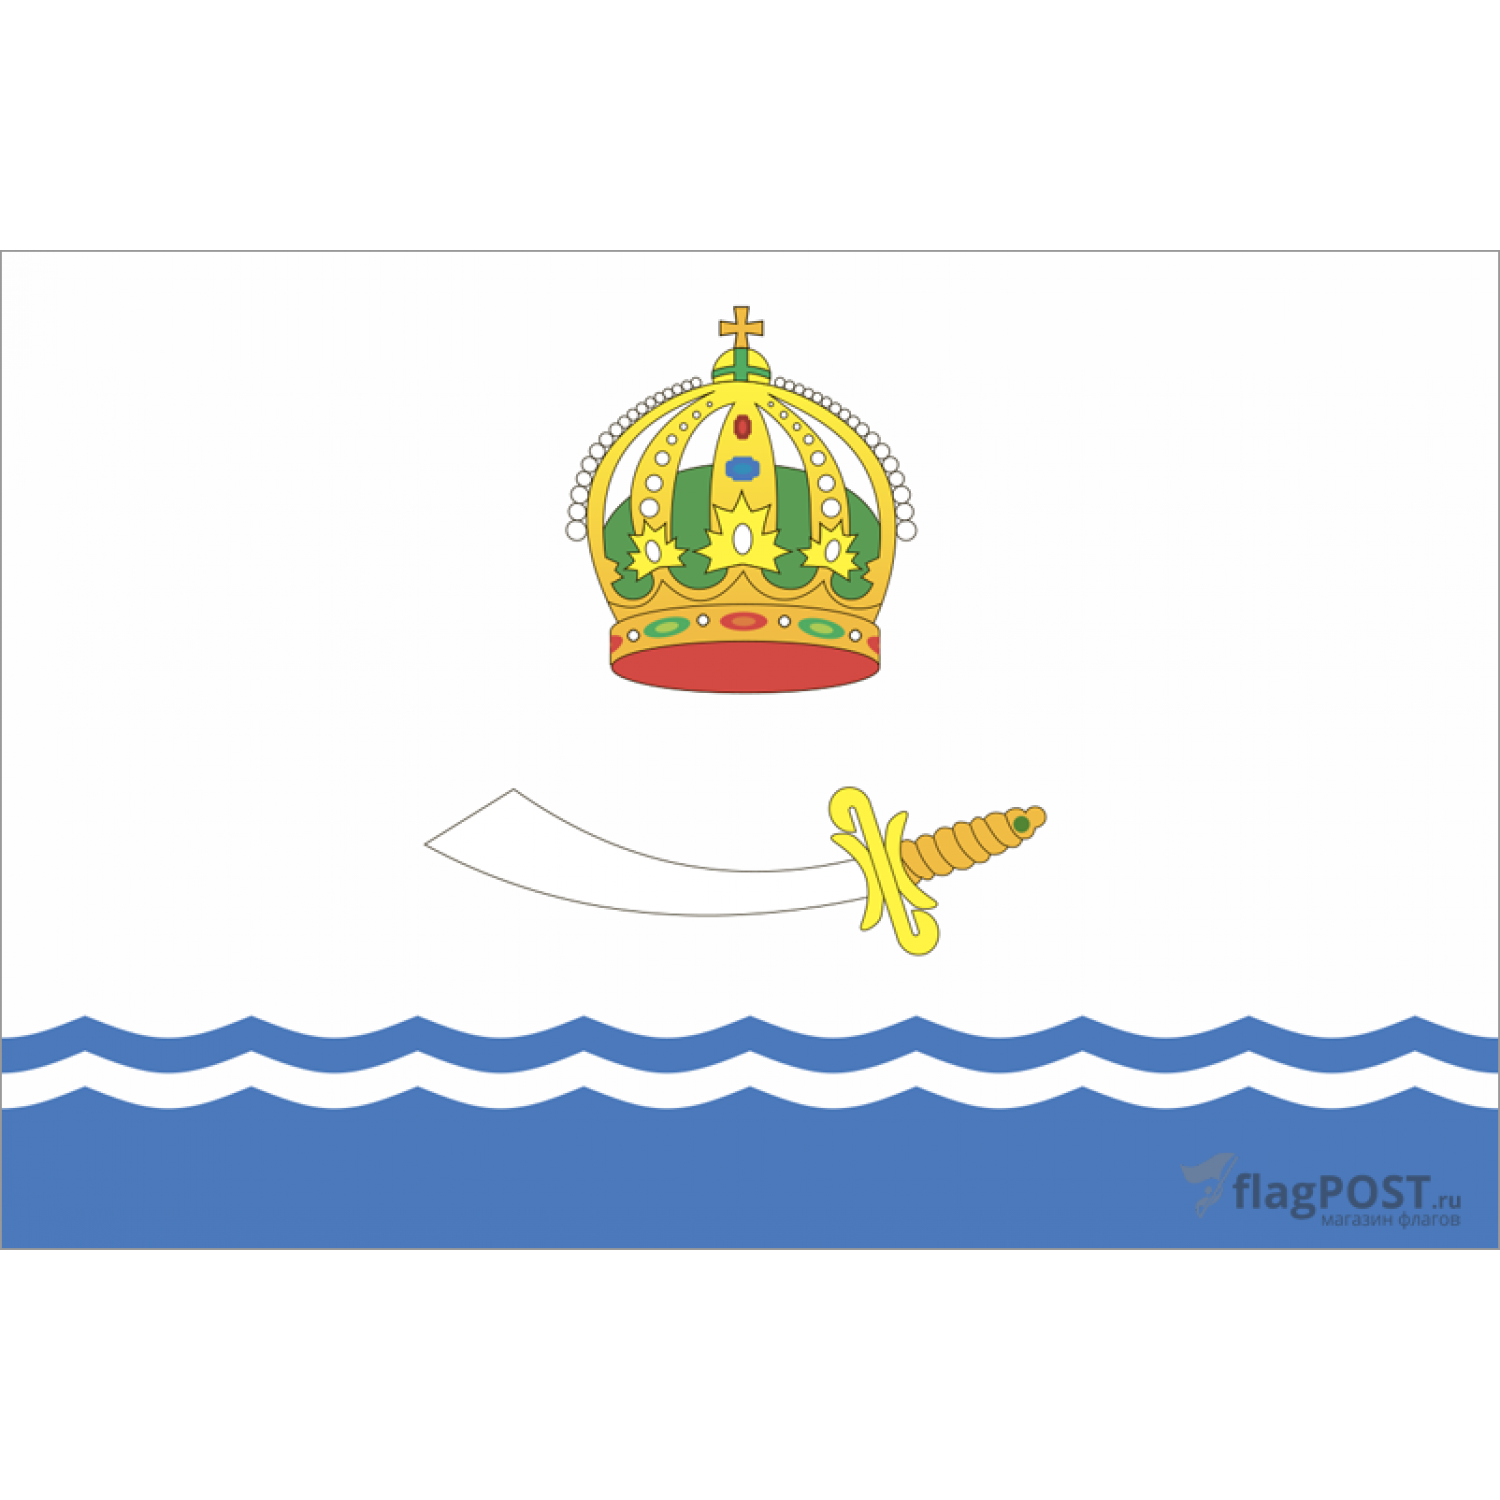 Флаг города Астрахань (90x135 см., полиэфирный шелк, прямая печать, прошит по периметру, карман слева)